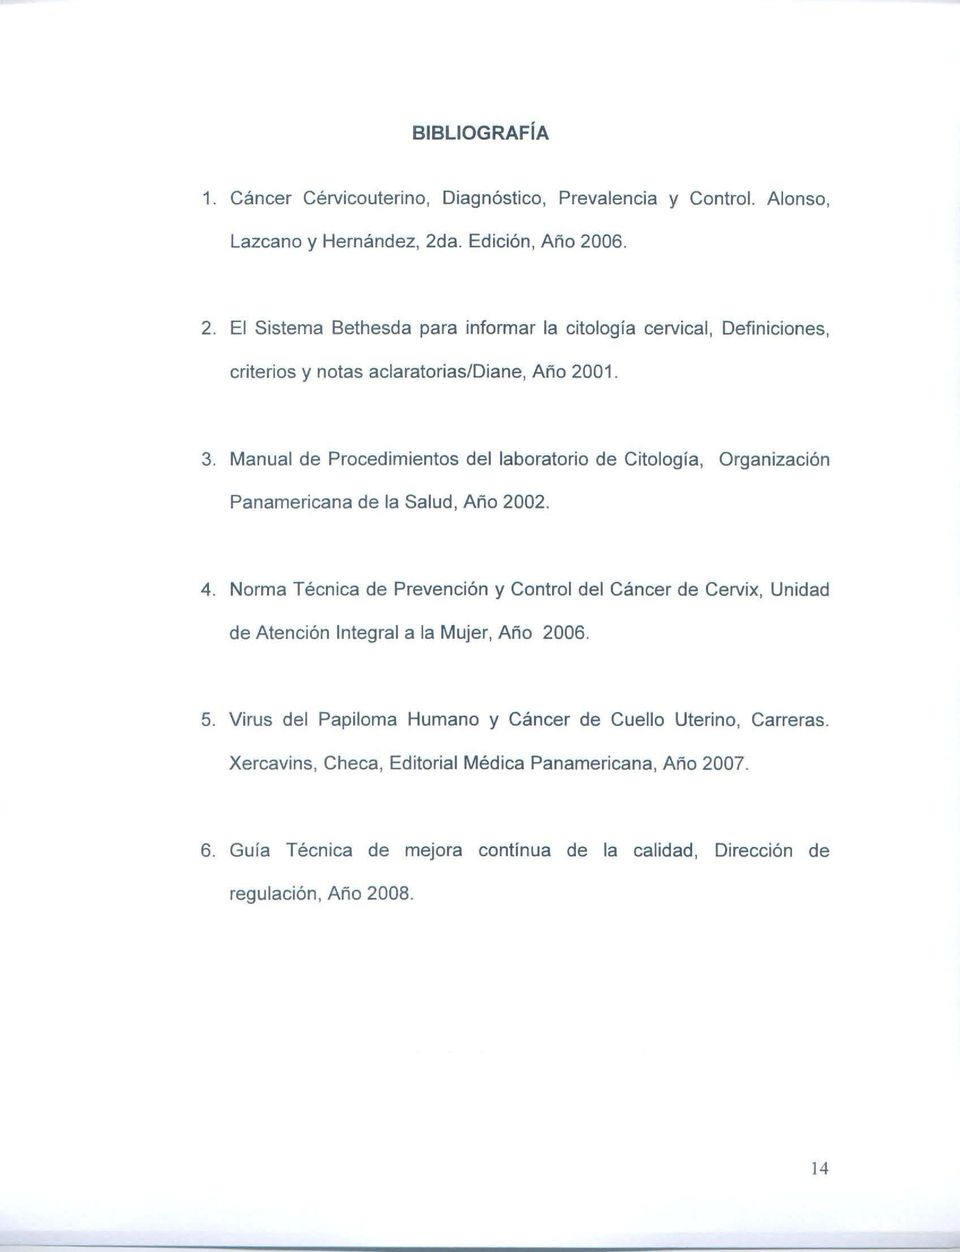 Manual de Proced ímientos del laboratorio de Citolog ía, Organización Panamericana de la Salud, Año 2002. 4.